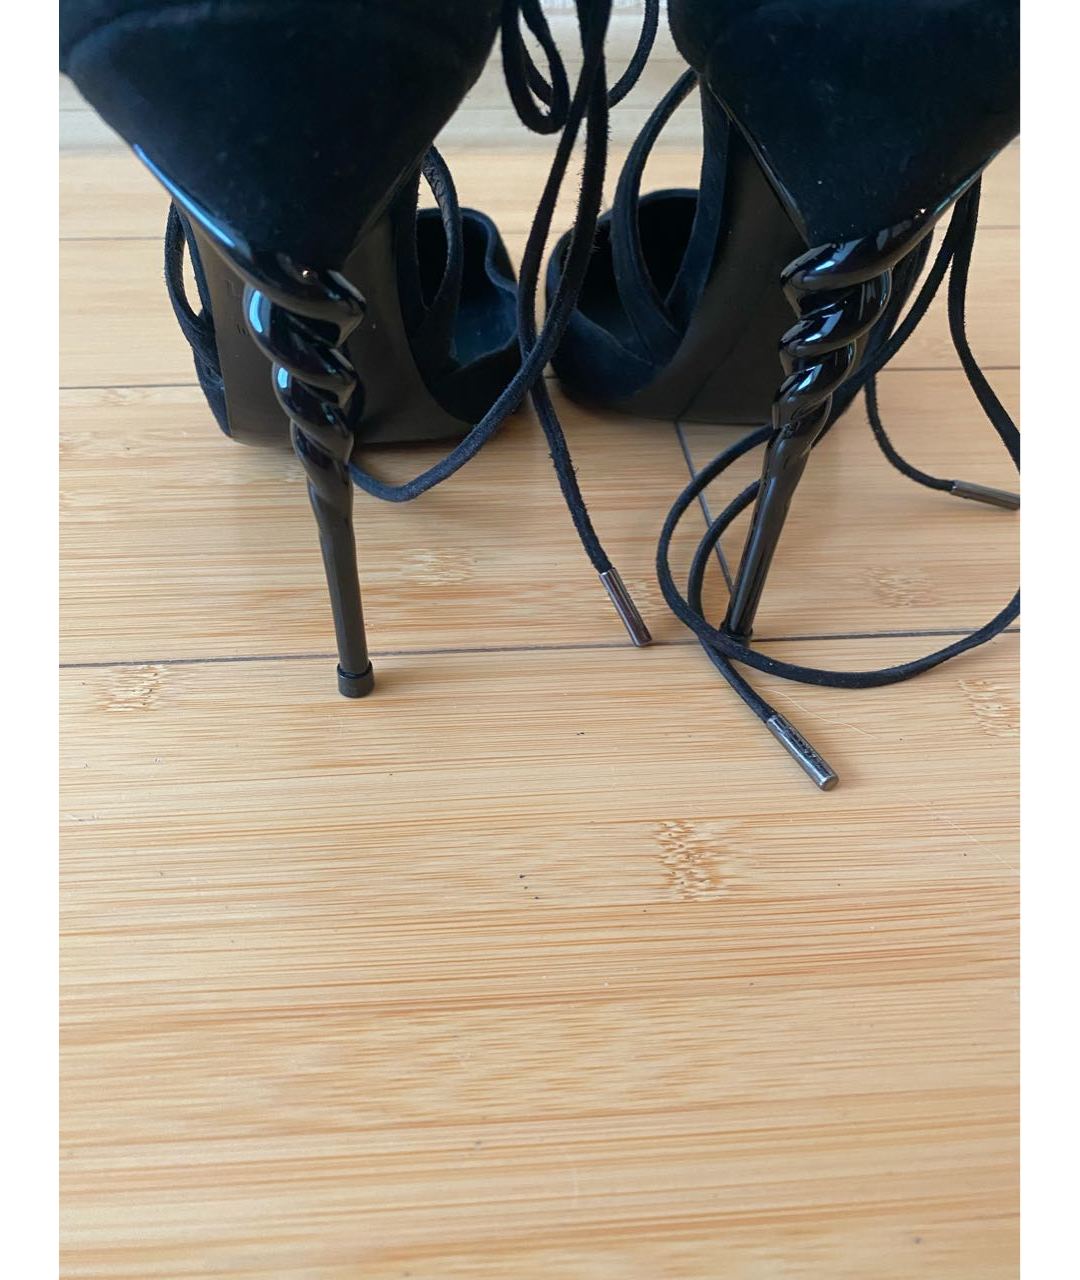 LE SILLA Черные замшевые туфли, фото 3